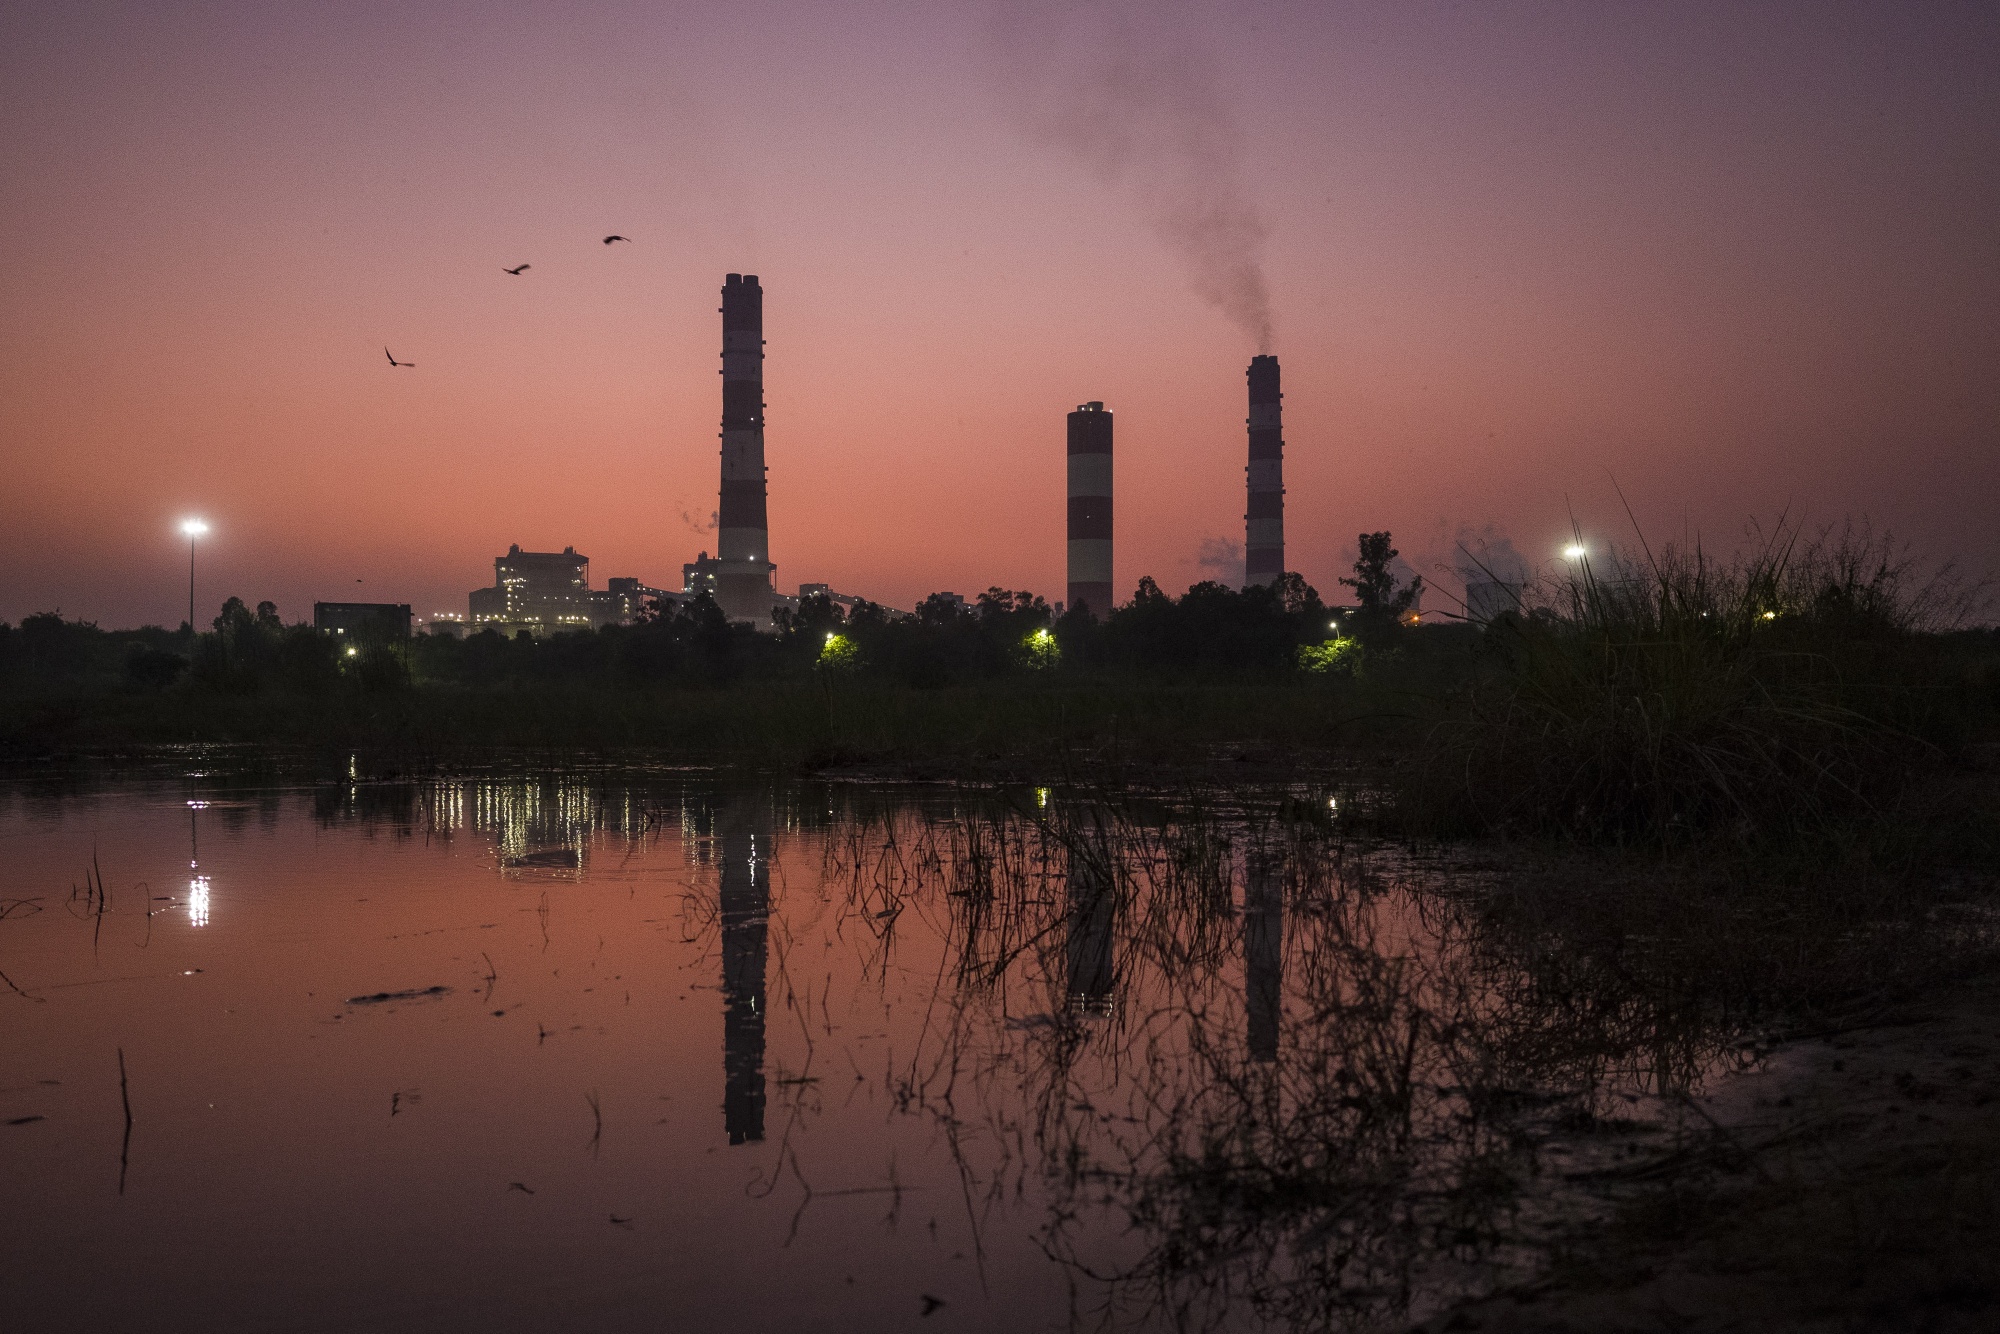 A coal-fired power plant in Gautam Budh Nagar district, Uttar Pradesh, India